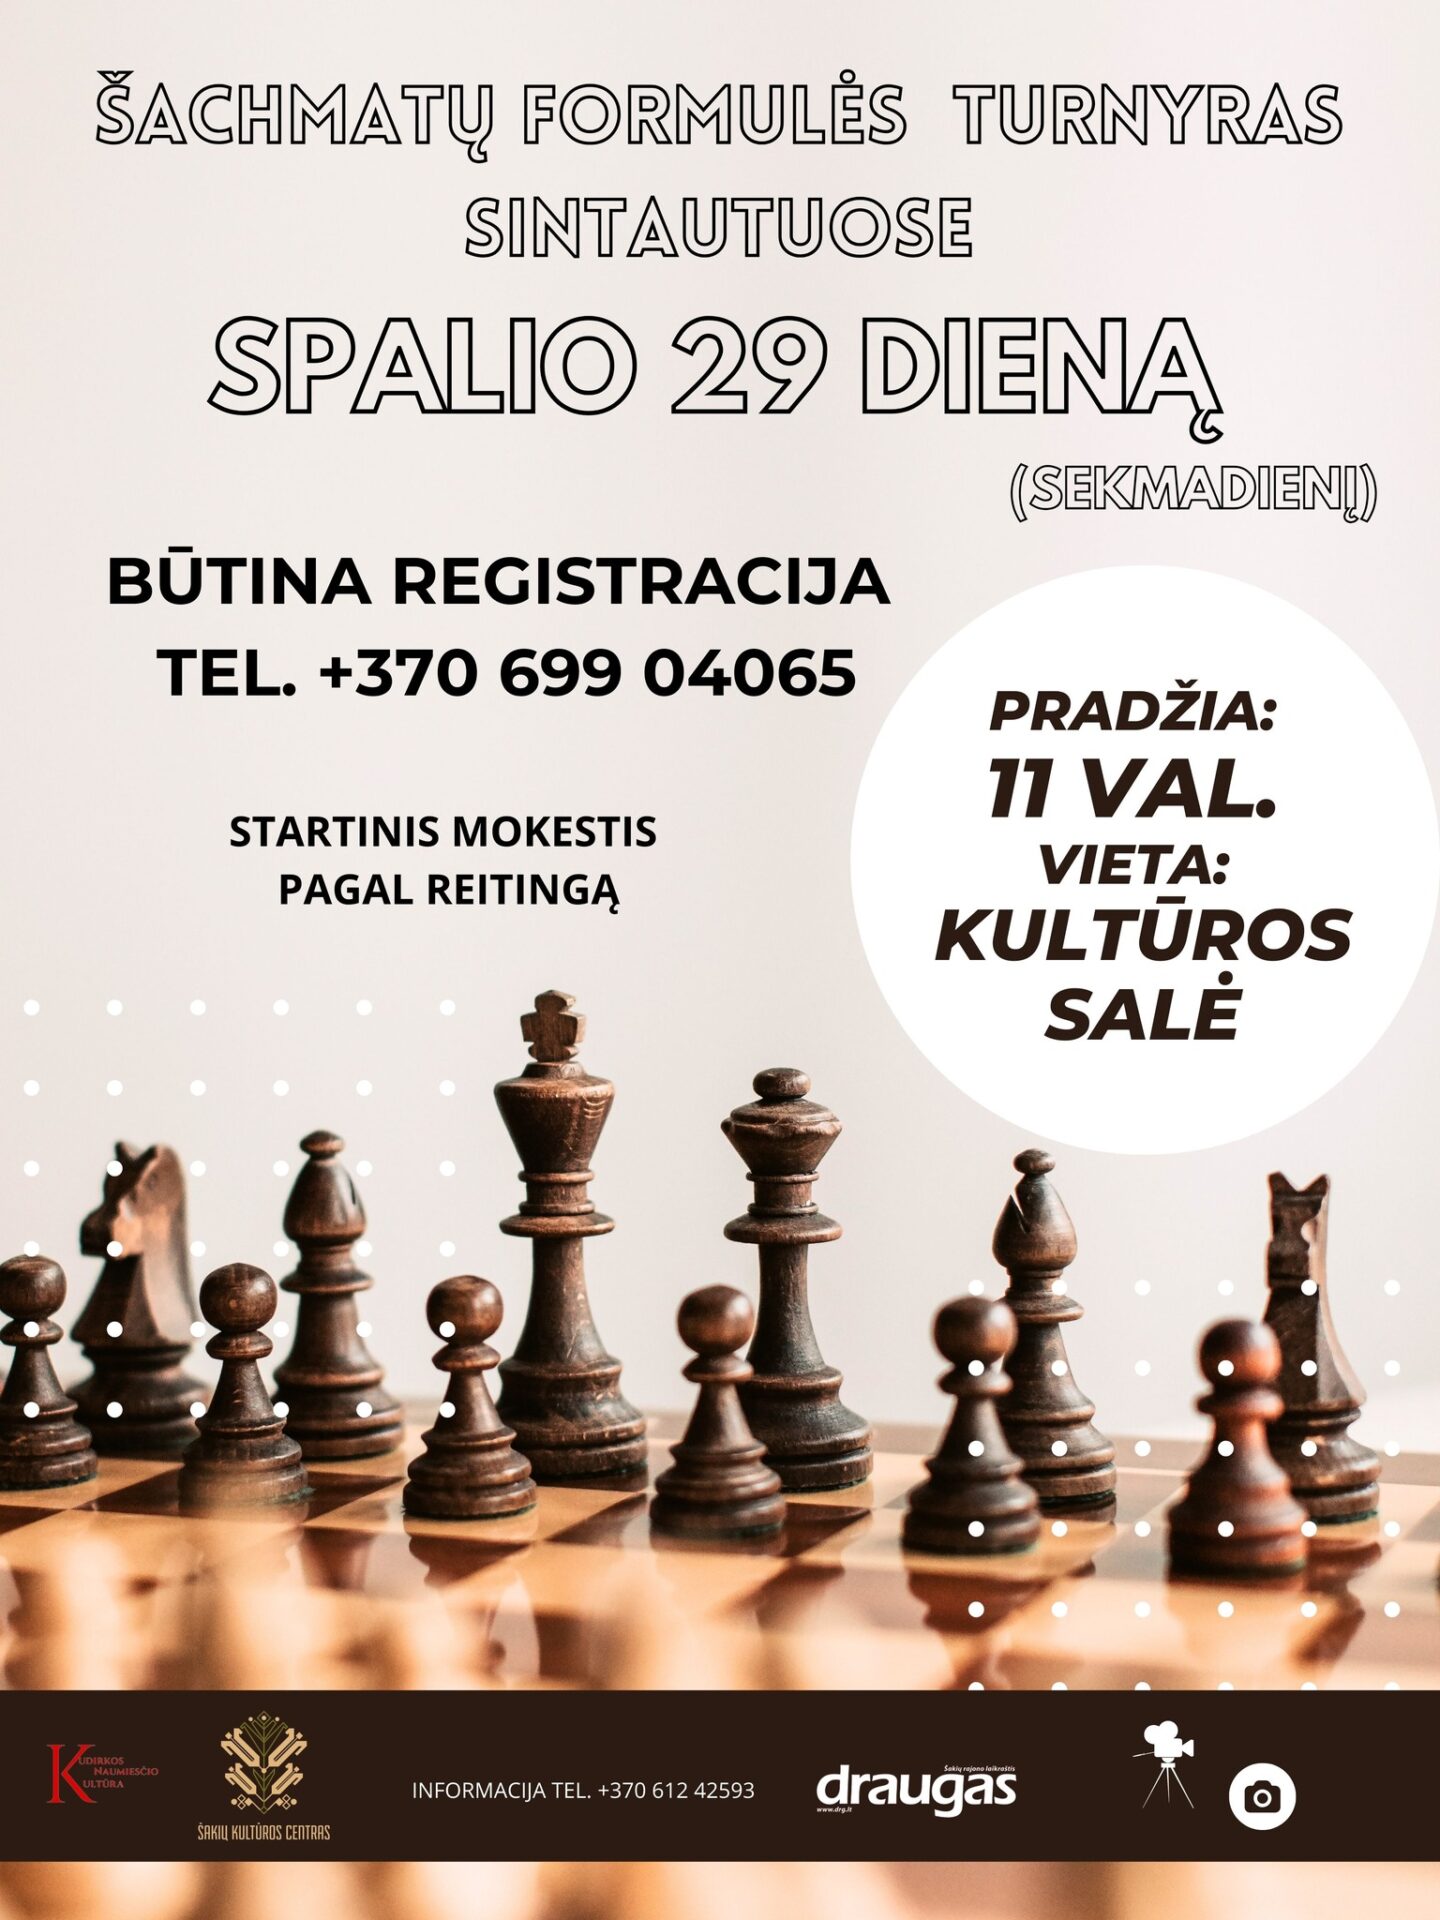 Šachmatų formulės turnyras Sintautuose